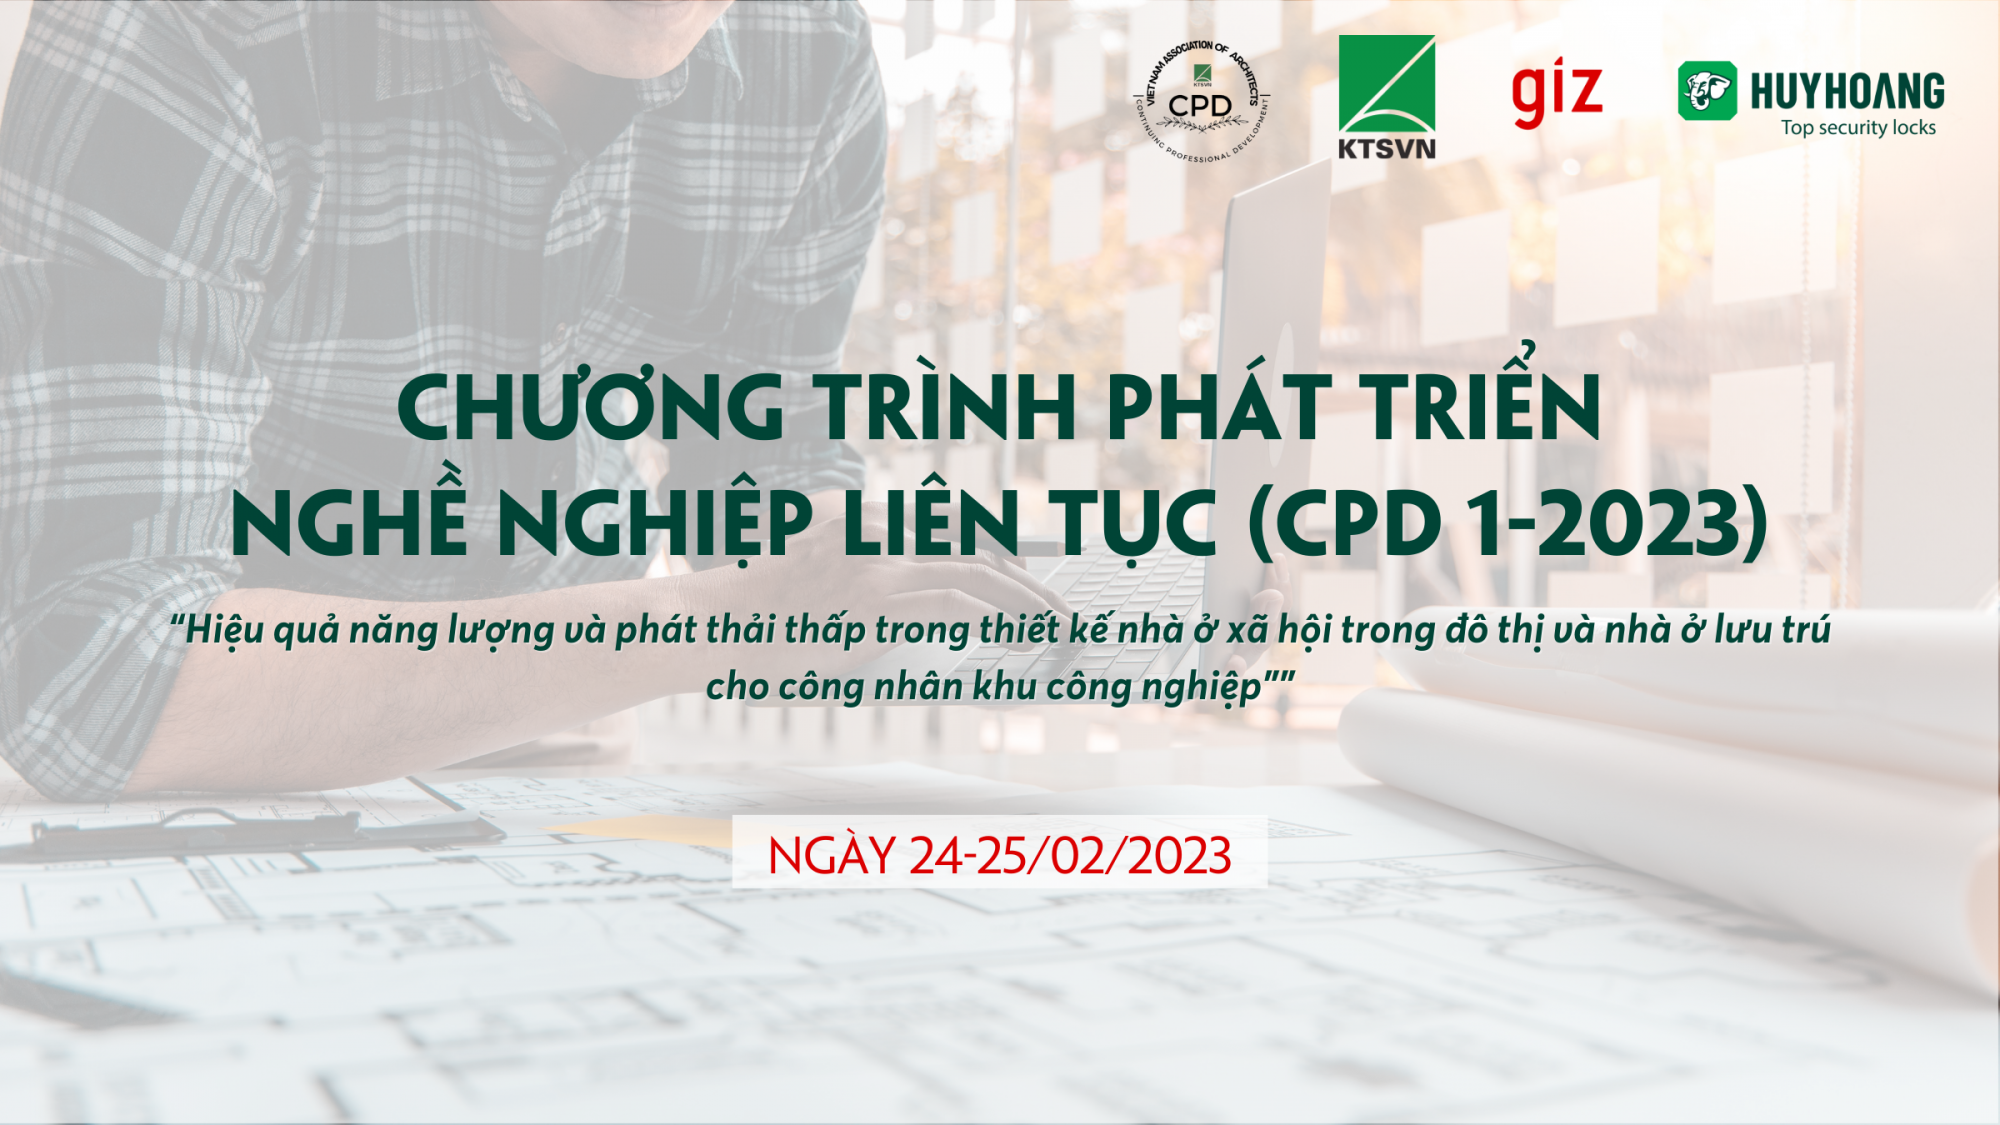 thong-bao-chuong-trinh-dao-tao-phat-trien-nghe-nghiep-lien-tuc-cpd-1-2023